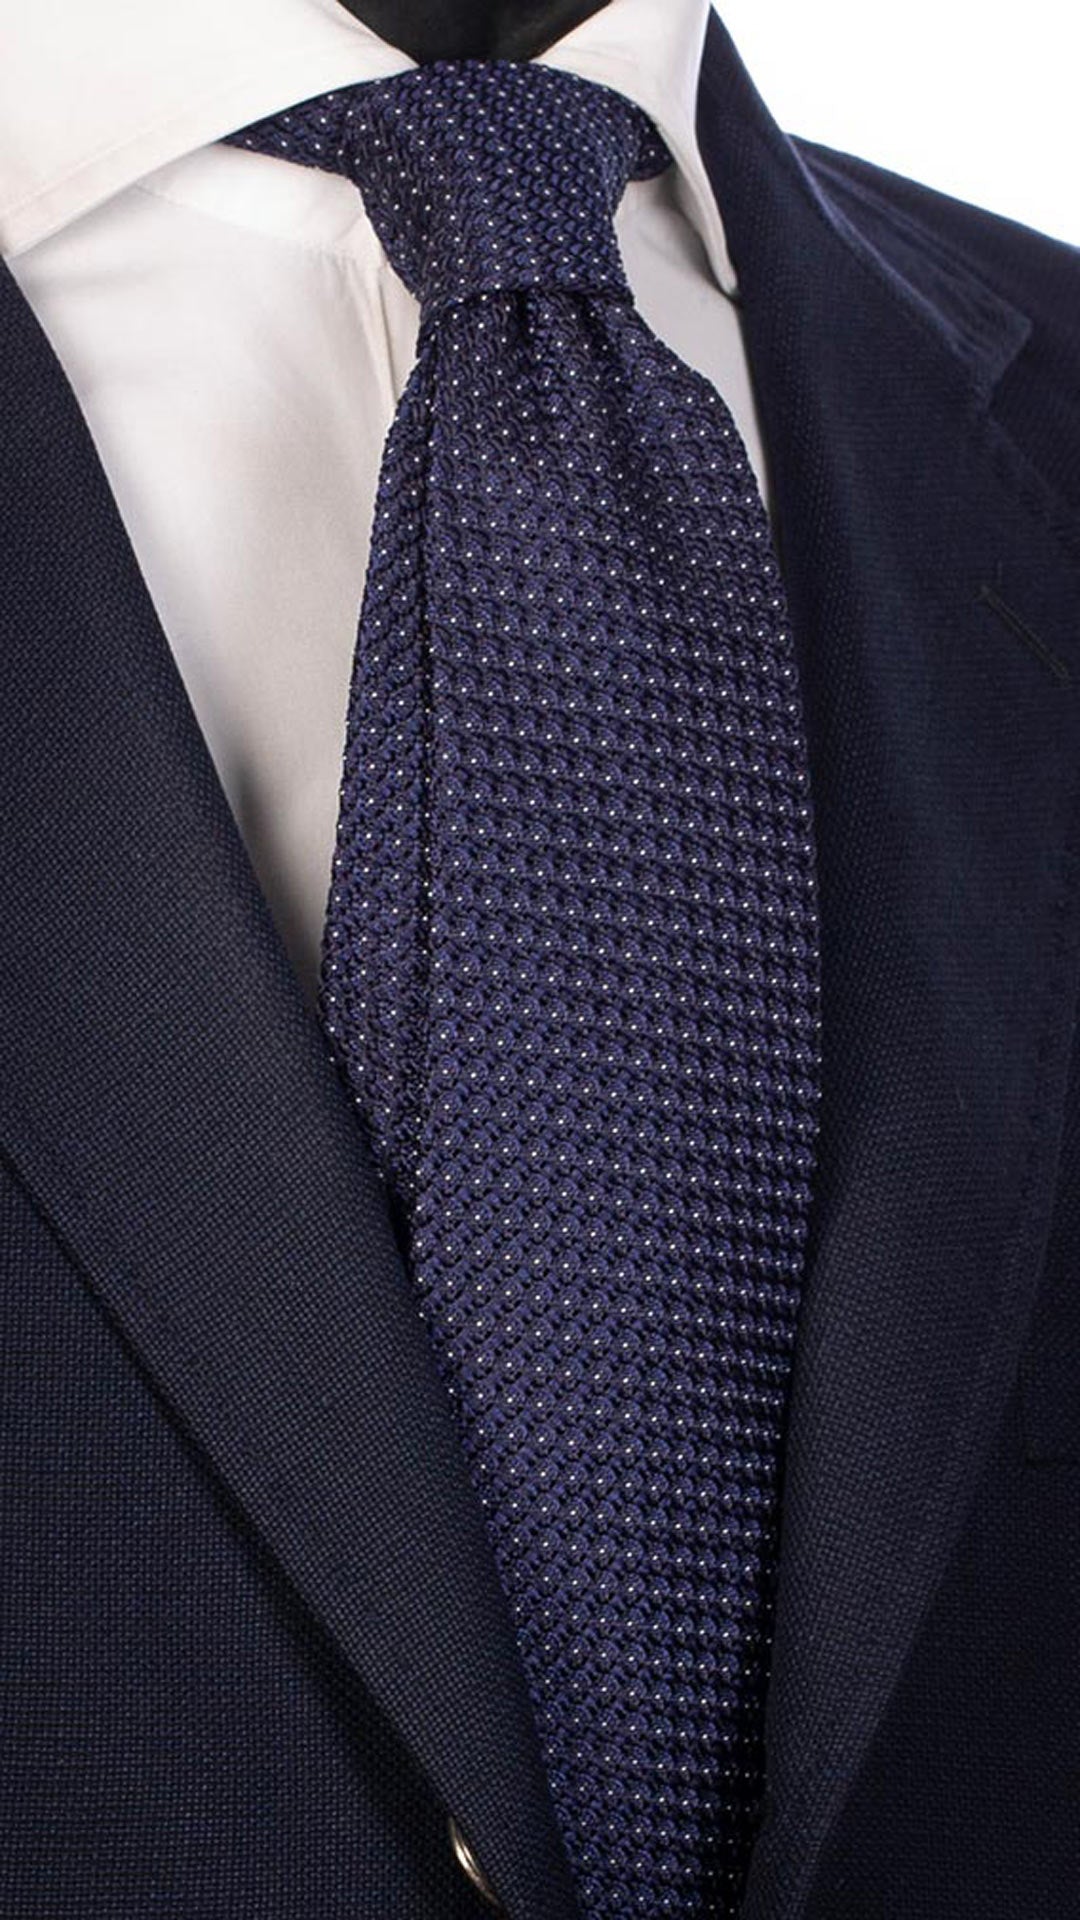 Cravatta da Cerimonia di Seta Bluette Fantasia Blu Bianca CY3975 Made in Italy Graffeo cravatte